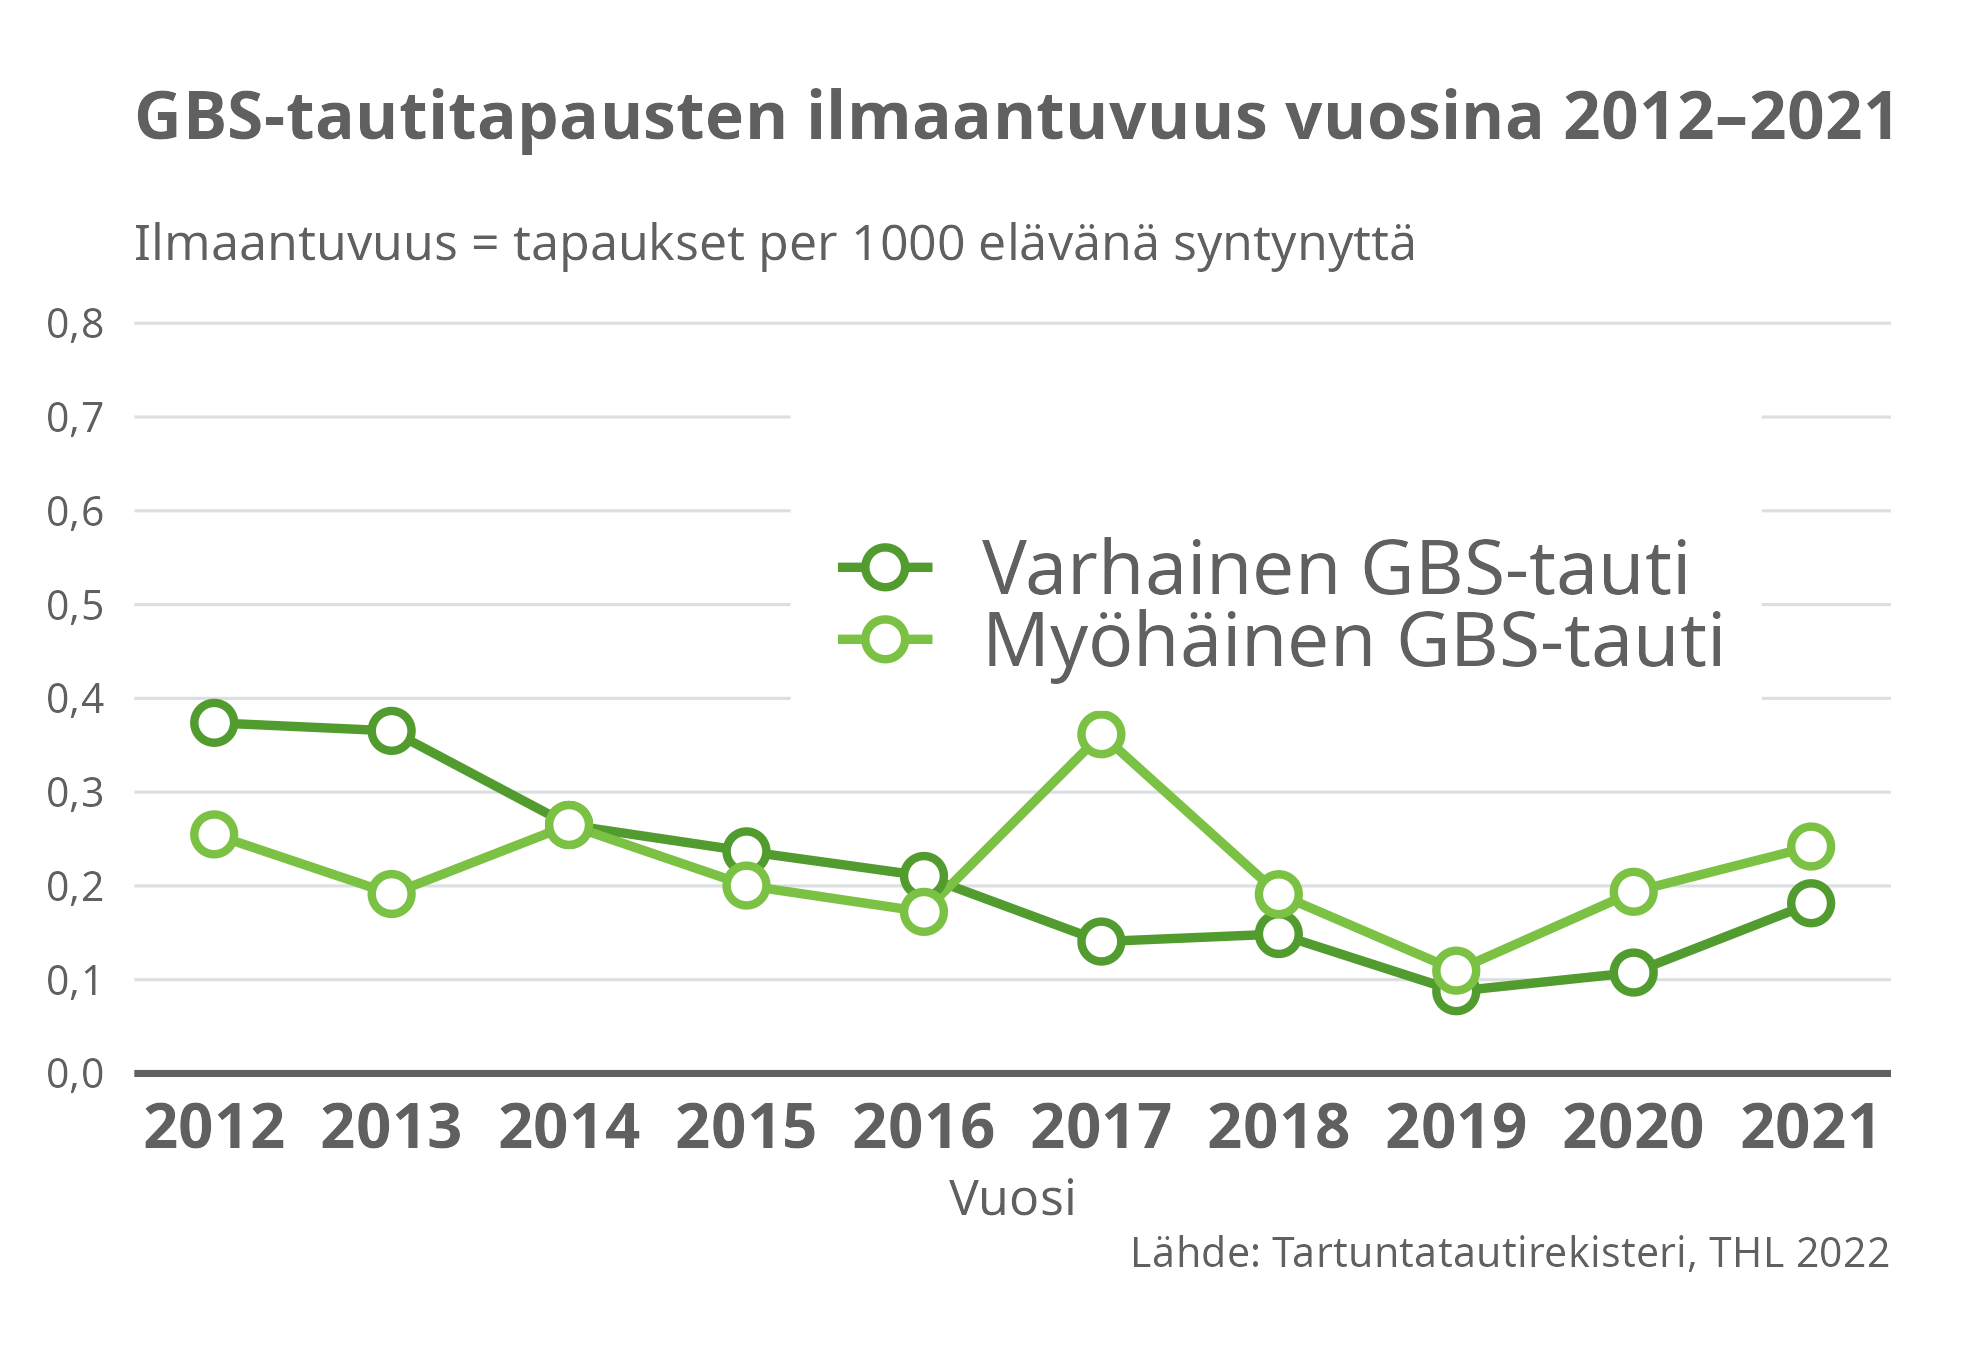 GBS-tautitapausten ilmaantuvuus vuosina 2012-2021.